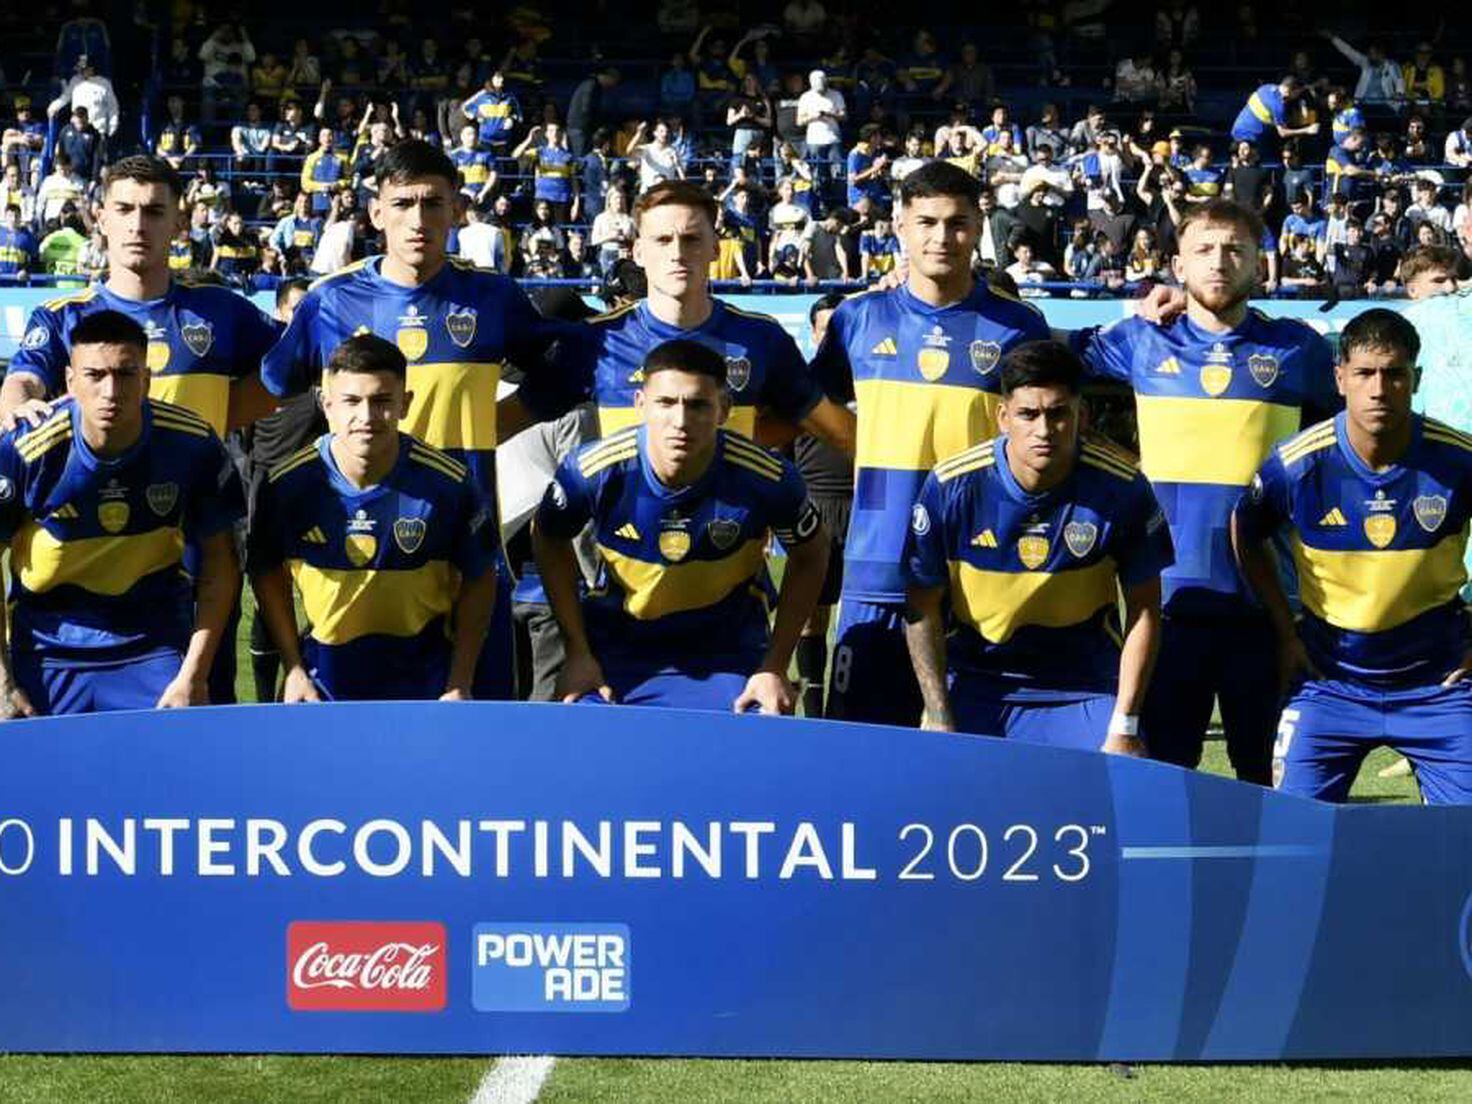 Independiente del Valle, el equipo que supo ser verdugo de Boca y